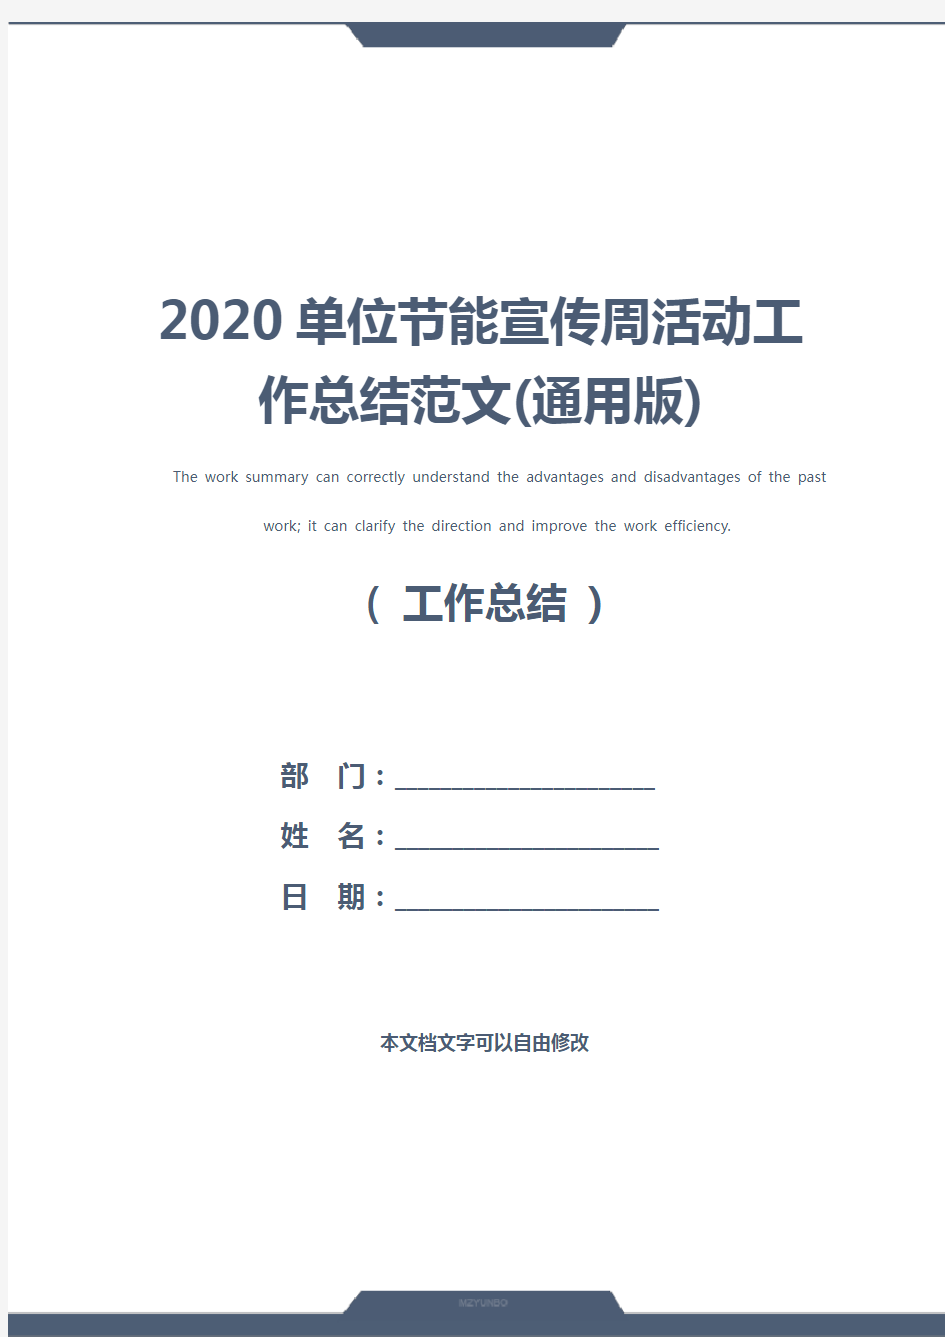 2020单位节能宣传周活动工作总结范文(通用版)